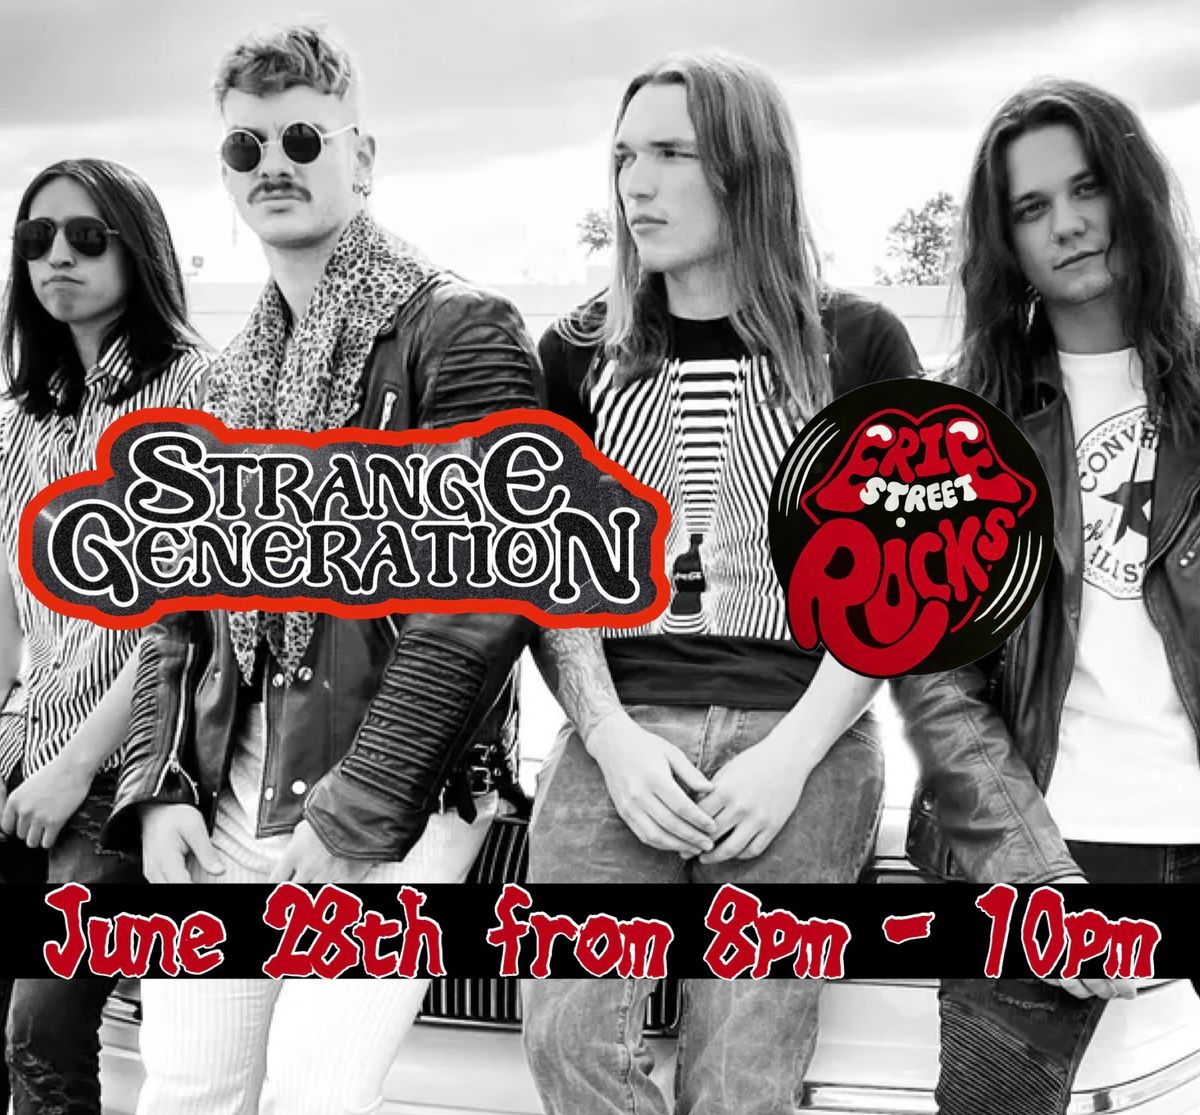 Strange Generation Live at Erie Street Rocks